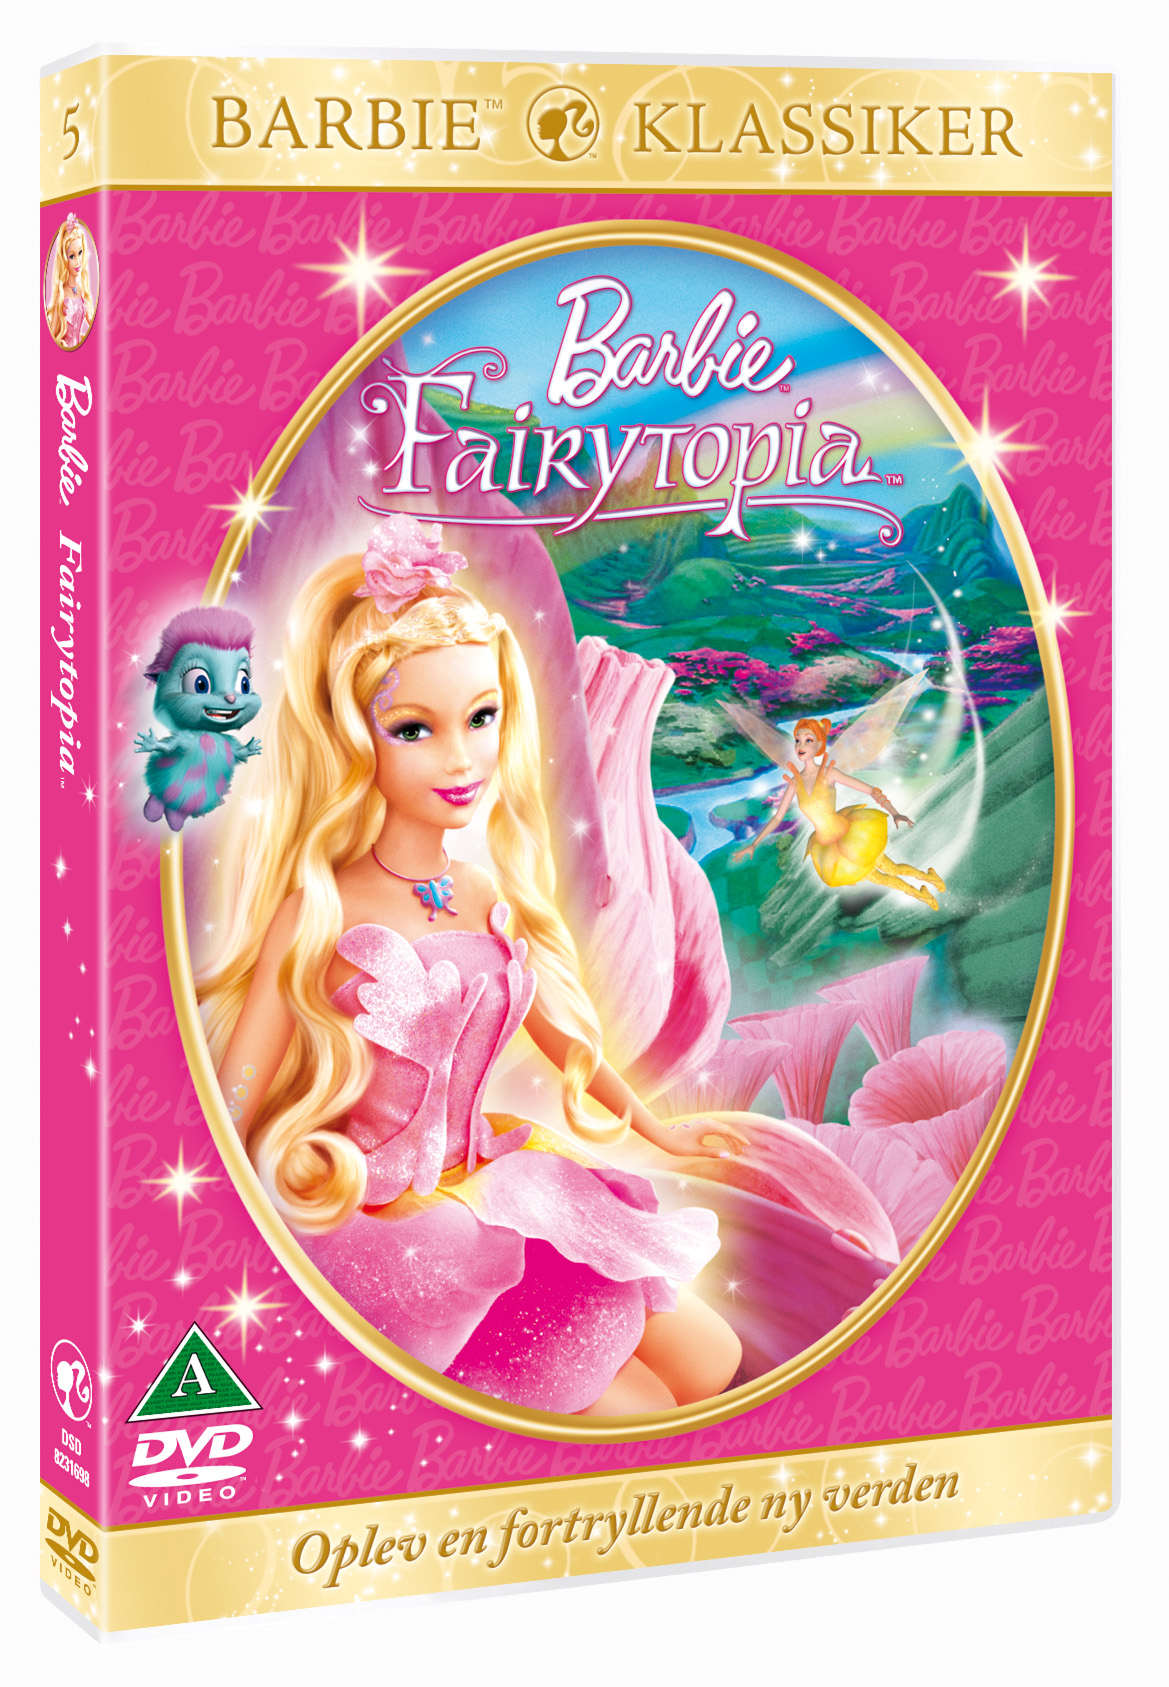 Hvor mange disse Barbie-film | Woman.dk